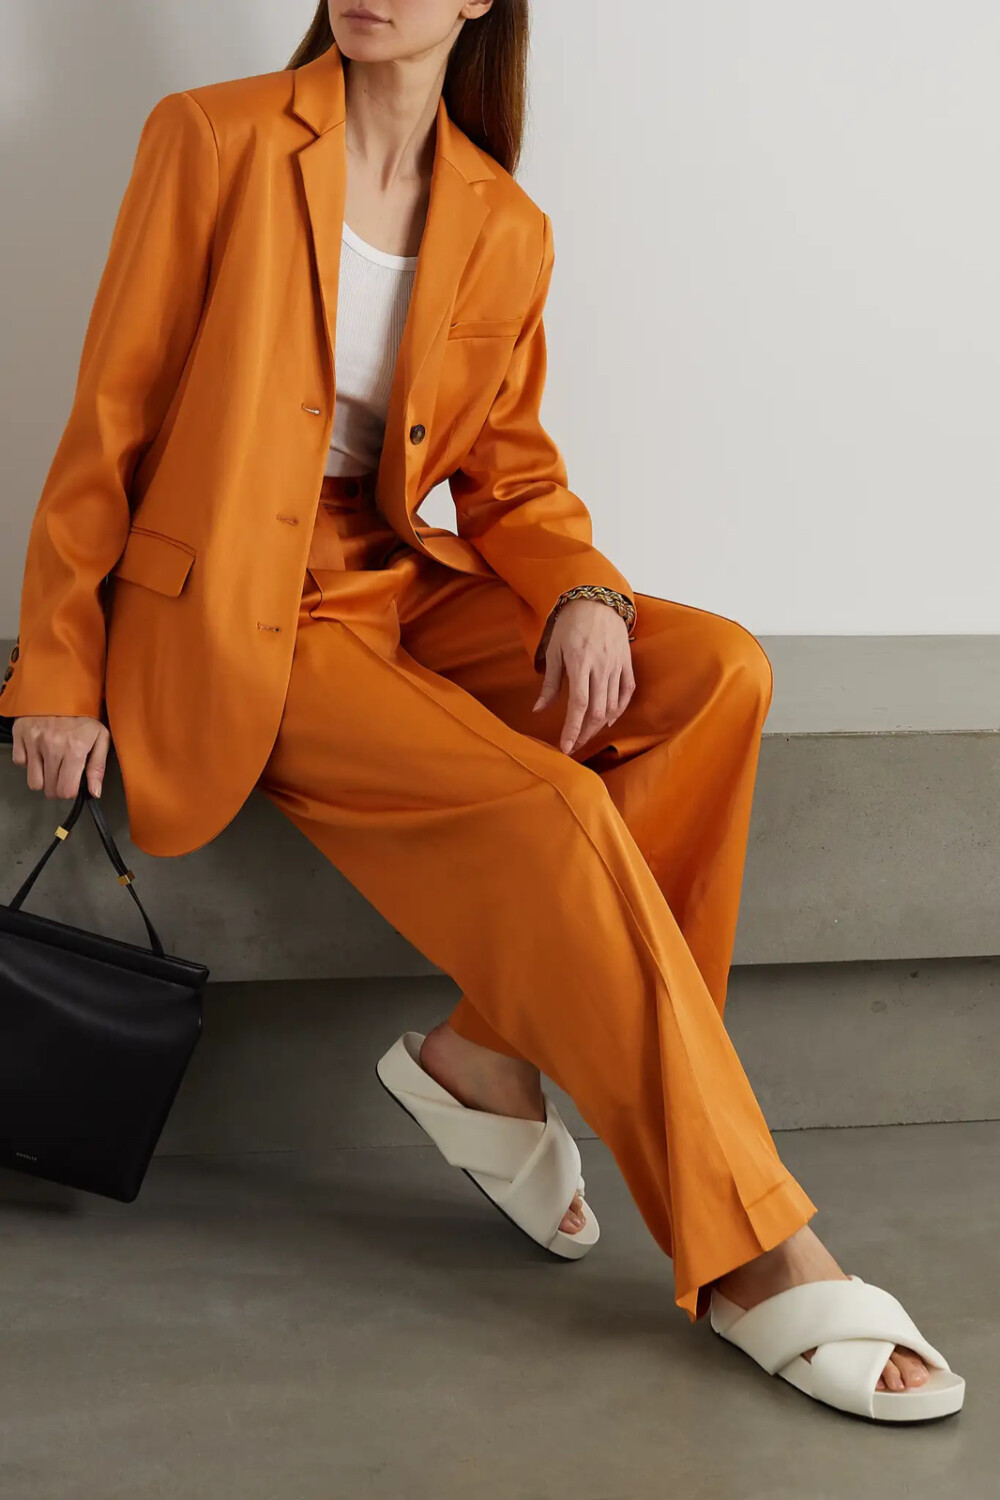 LOULOU STUDIO 的灵感板上，巴黎永远占据着主要地位，品牌每季作品都取材自这一浪漫之都的建筑、艺术与风尚。这款 “Sund” 西装外套以略带弹力的缎布制成，明媚的橙色衣身令人不禁想起当代画廊里的先锋画作。不妨与配套西裤成套搭配，或是搭配你心爱的古着牛仔裤。